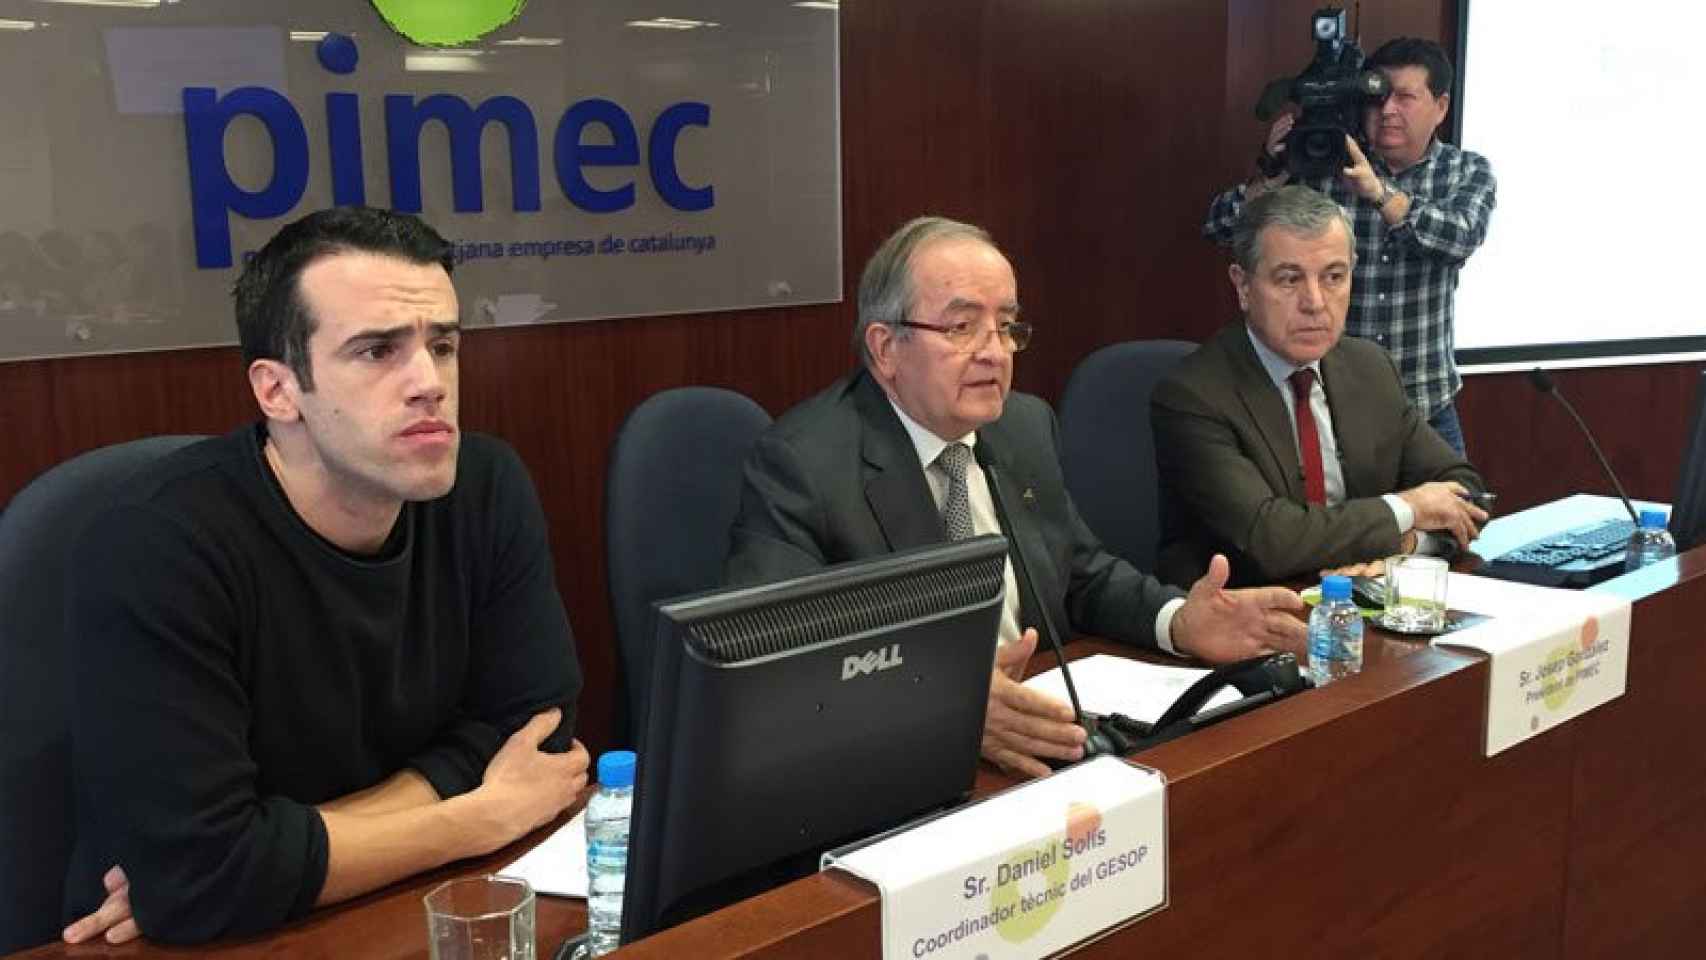 Josep González (centro), presidente de Pimec, junto al responsable de economía y empresa de la patronal, Modest Guijoan (derecha), y el coordinador técnico de Gesop, Daniel Solís (izquierda)